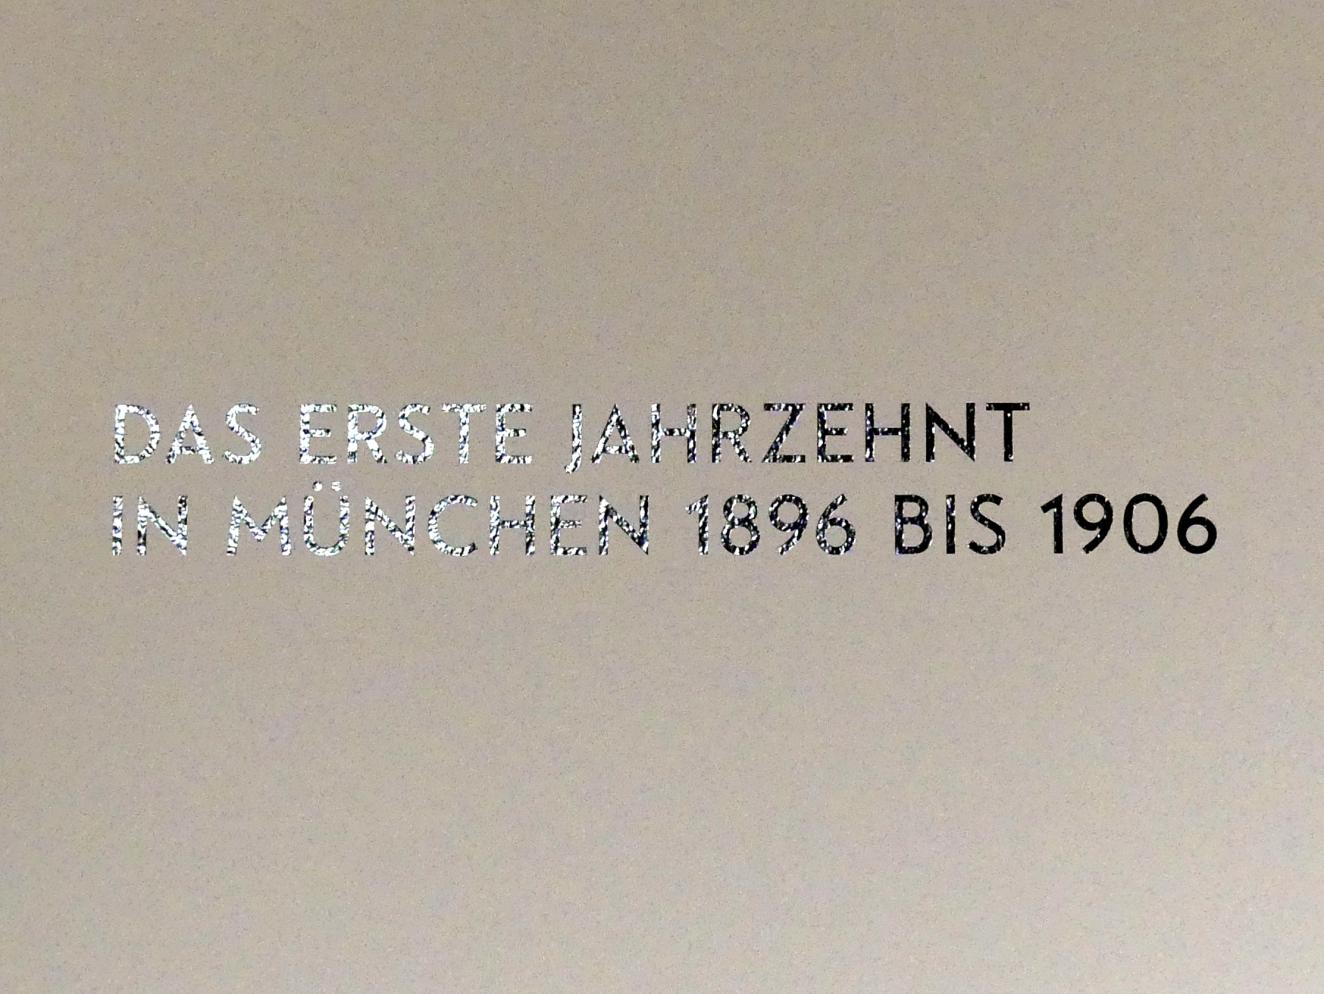 München, Lenbachhaus, Kunstbau, Ausstellung "Lebensmenschen" vom 22.10.2019-16.02.2020, Das erste Jahrzehnt in München 1896-1906, Bild 4/10